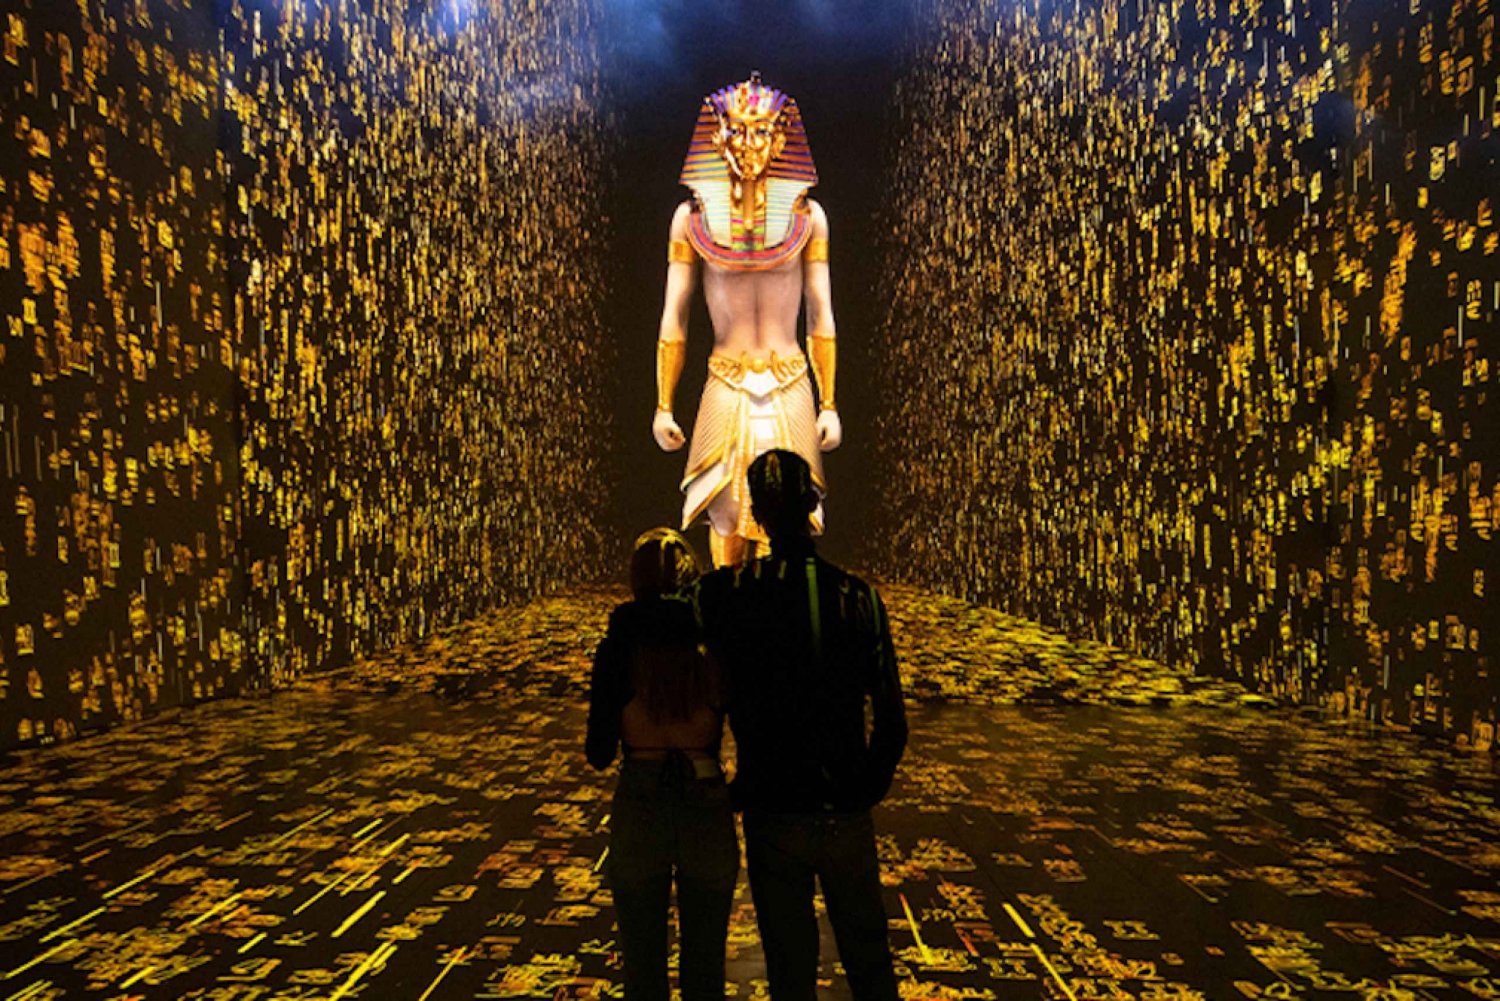 Barcelona: Tutankamon Immersive Experience Inträdesbiljett